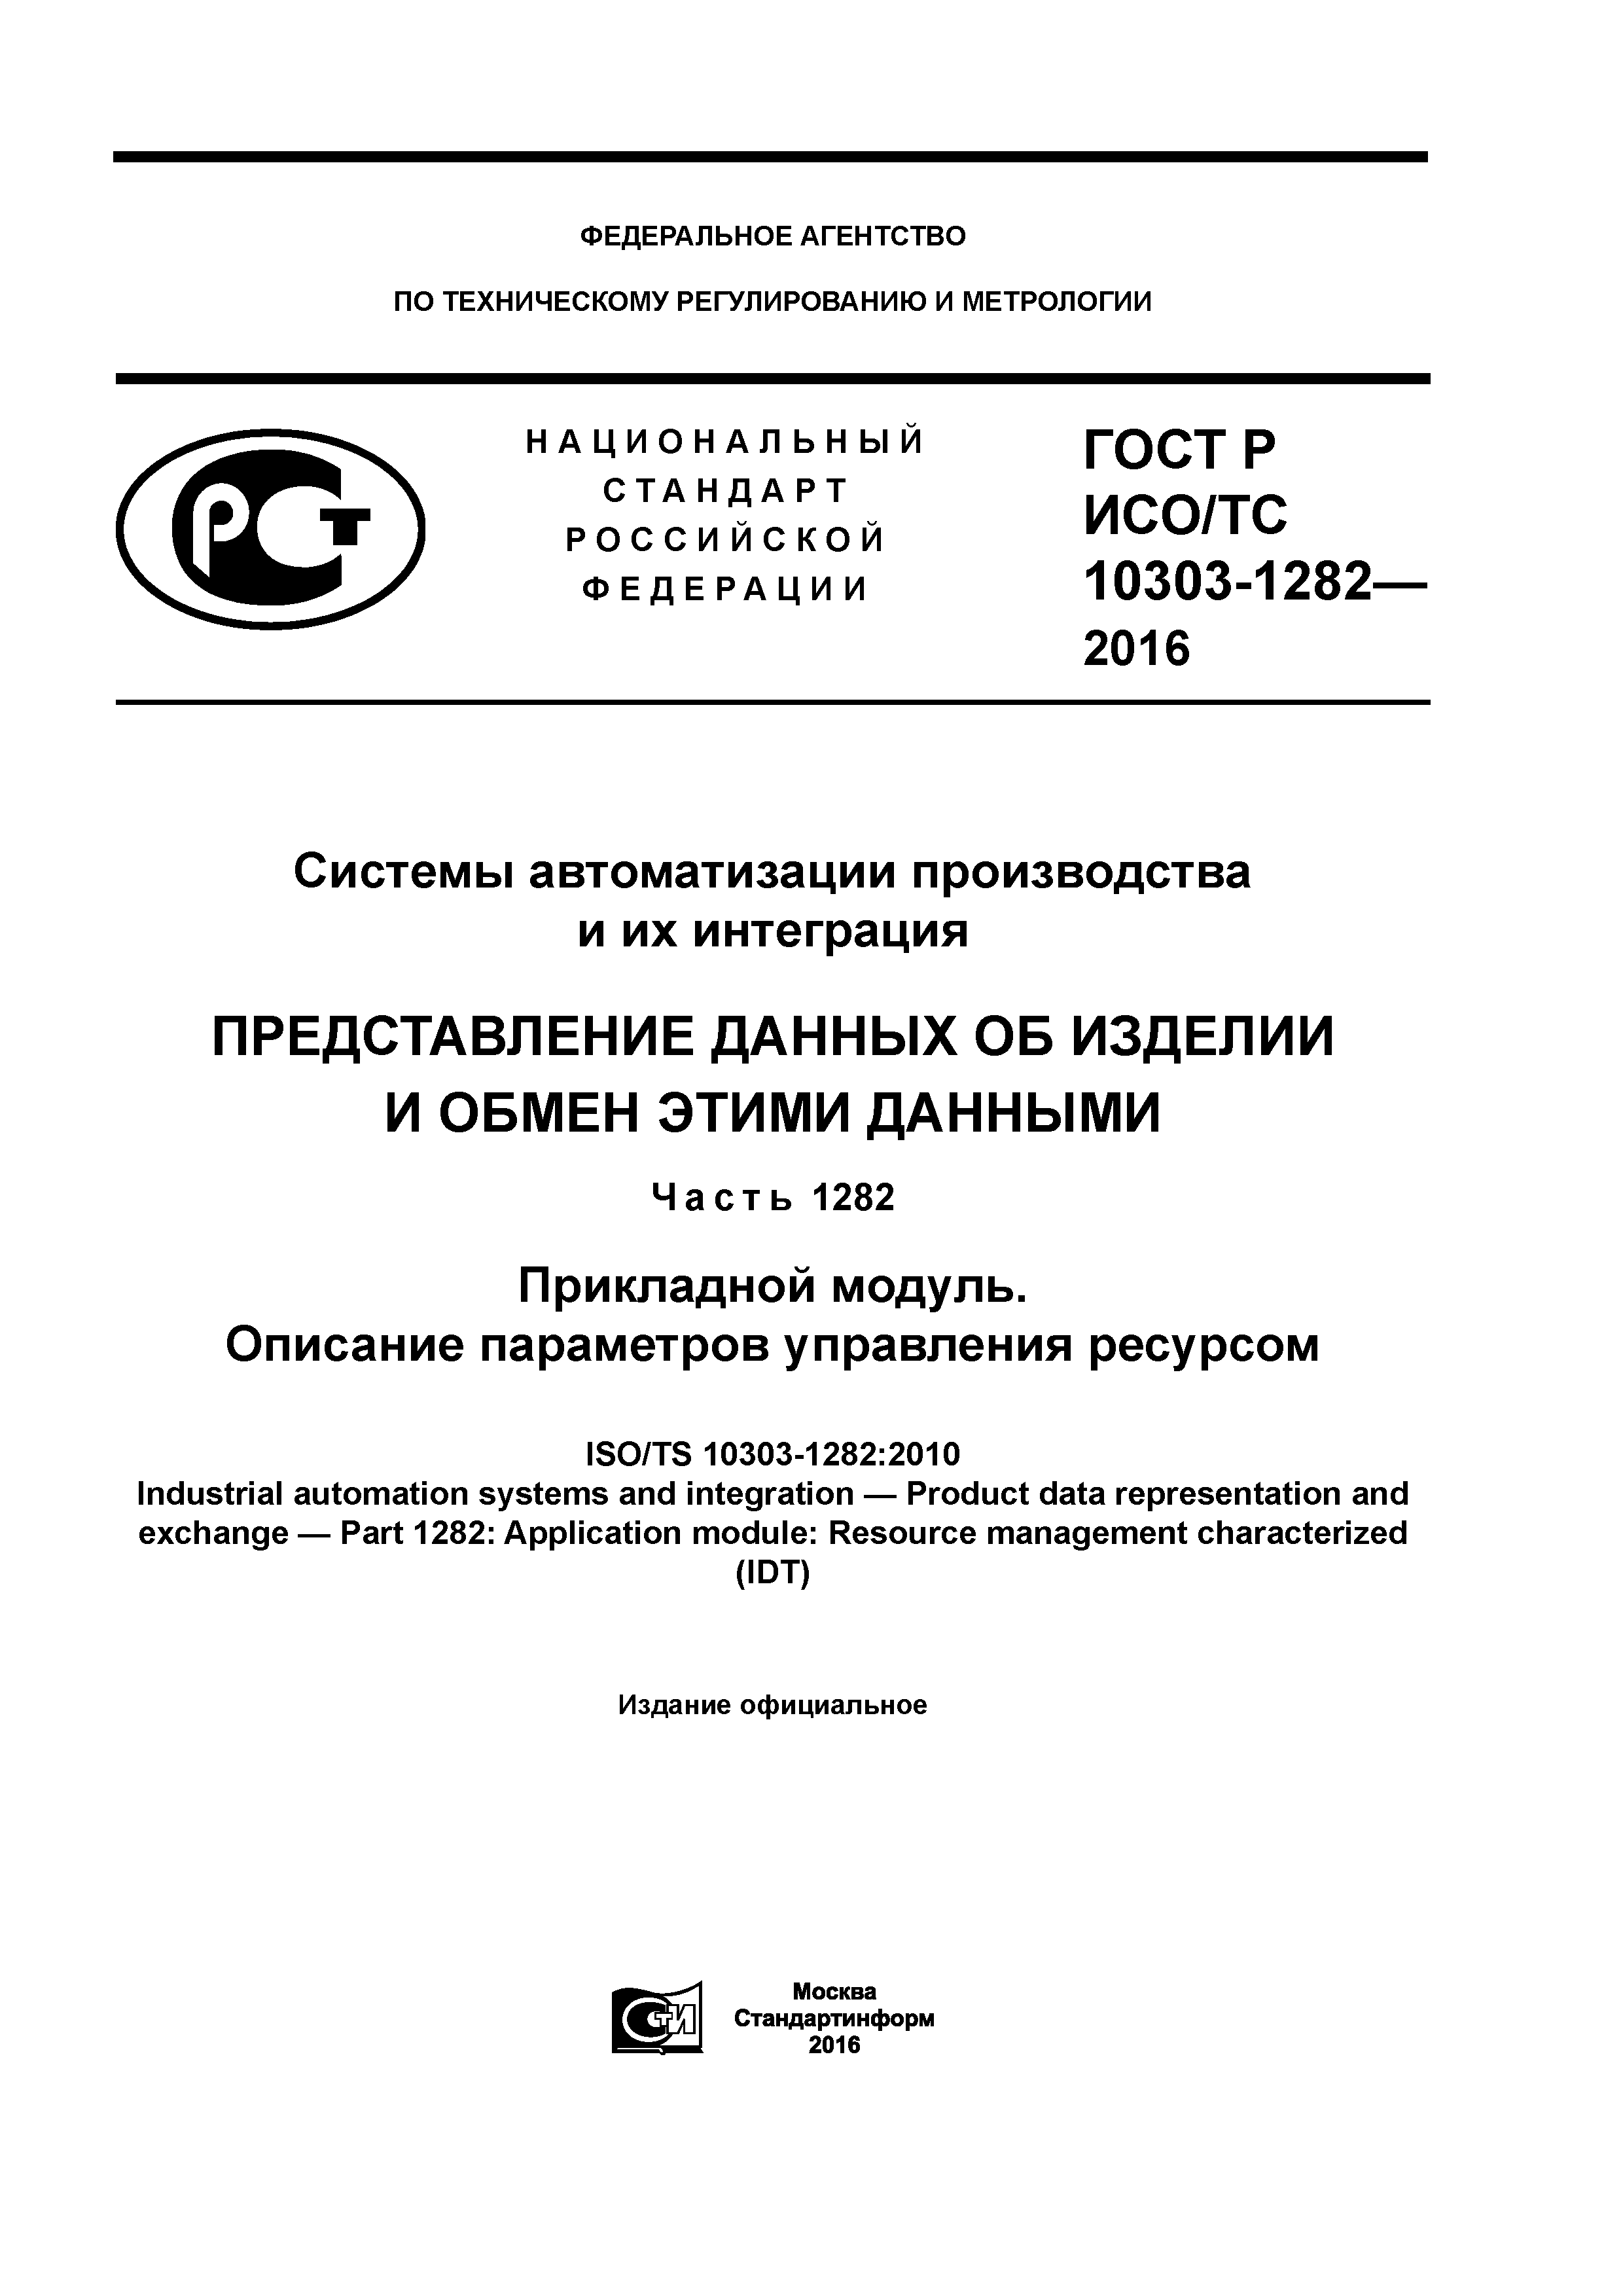 ГОСТ Р ИСО/ТС 10303-1282-2016